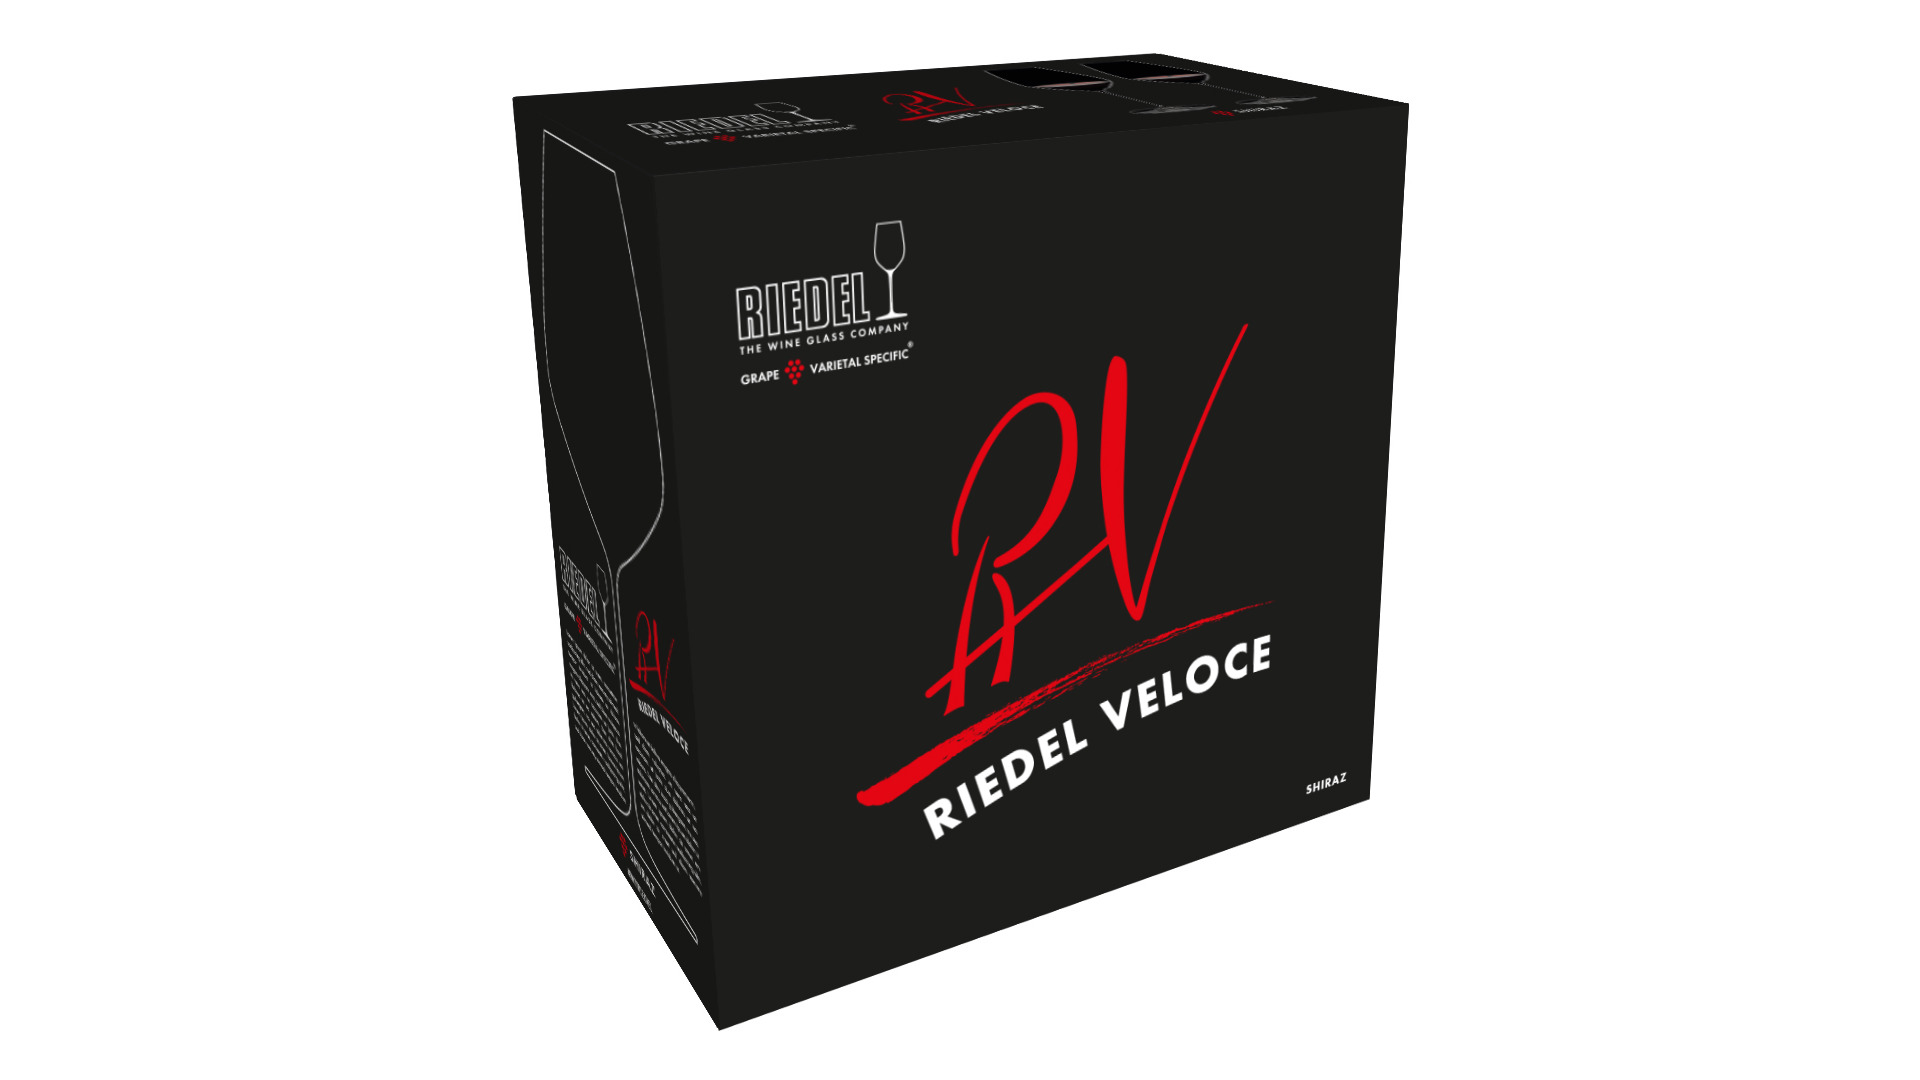 Набор бокалов для красного вина Riedel Veloce Syrah 720 мл, 2шт, стекло хрустальное, п/к